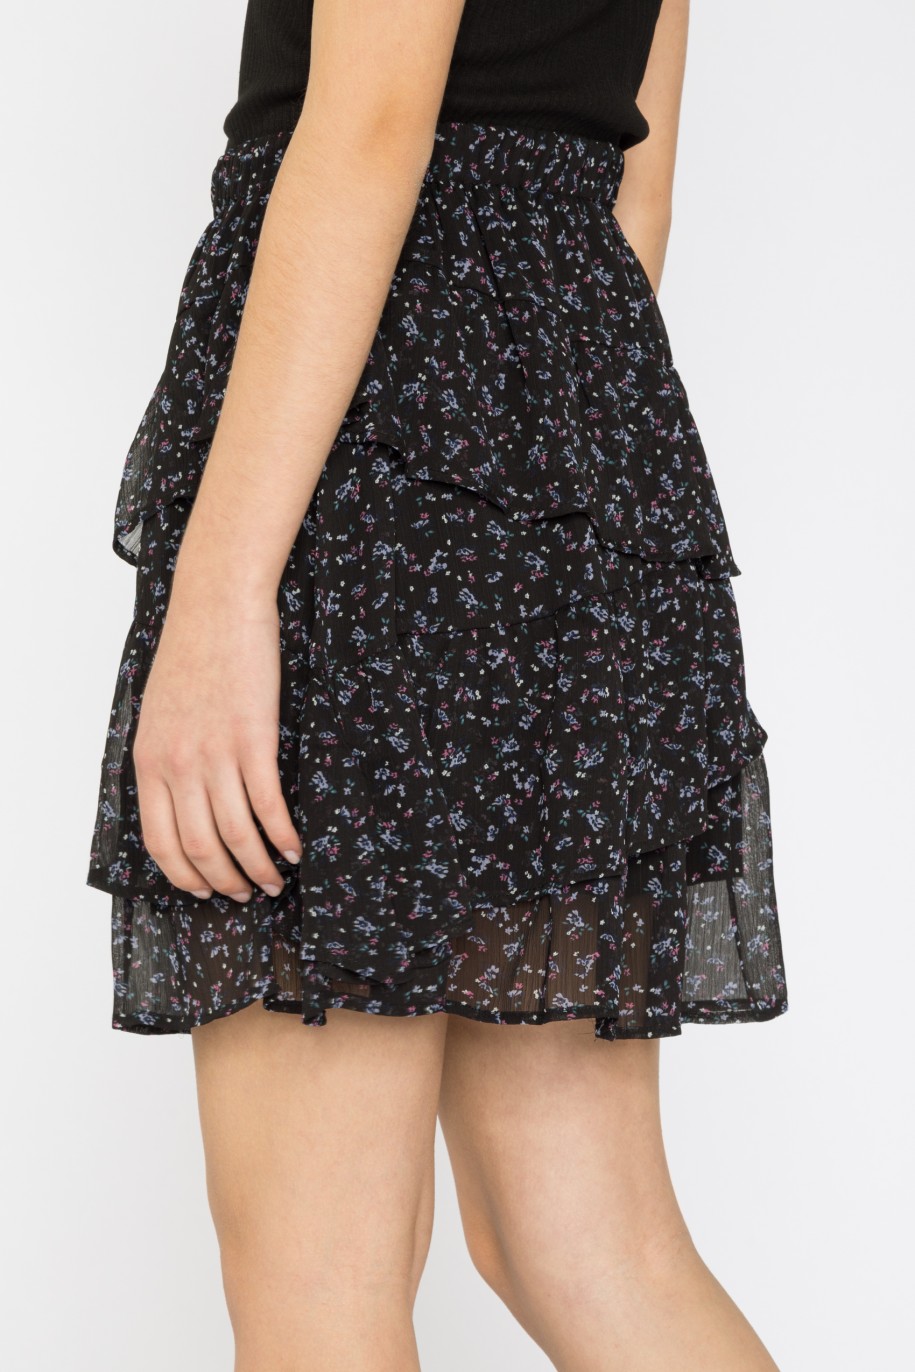 Czarna spódnica dla dziewczyny z falbanami w kwiaty - 32036